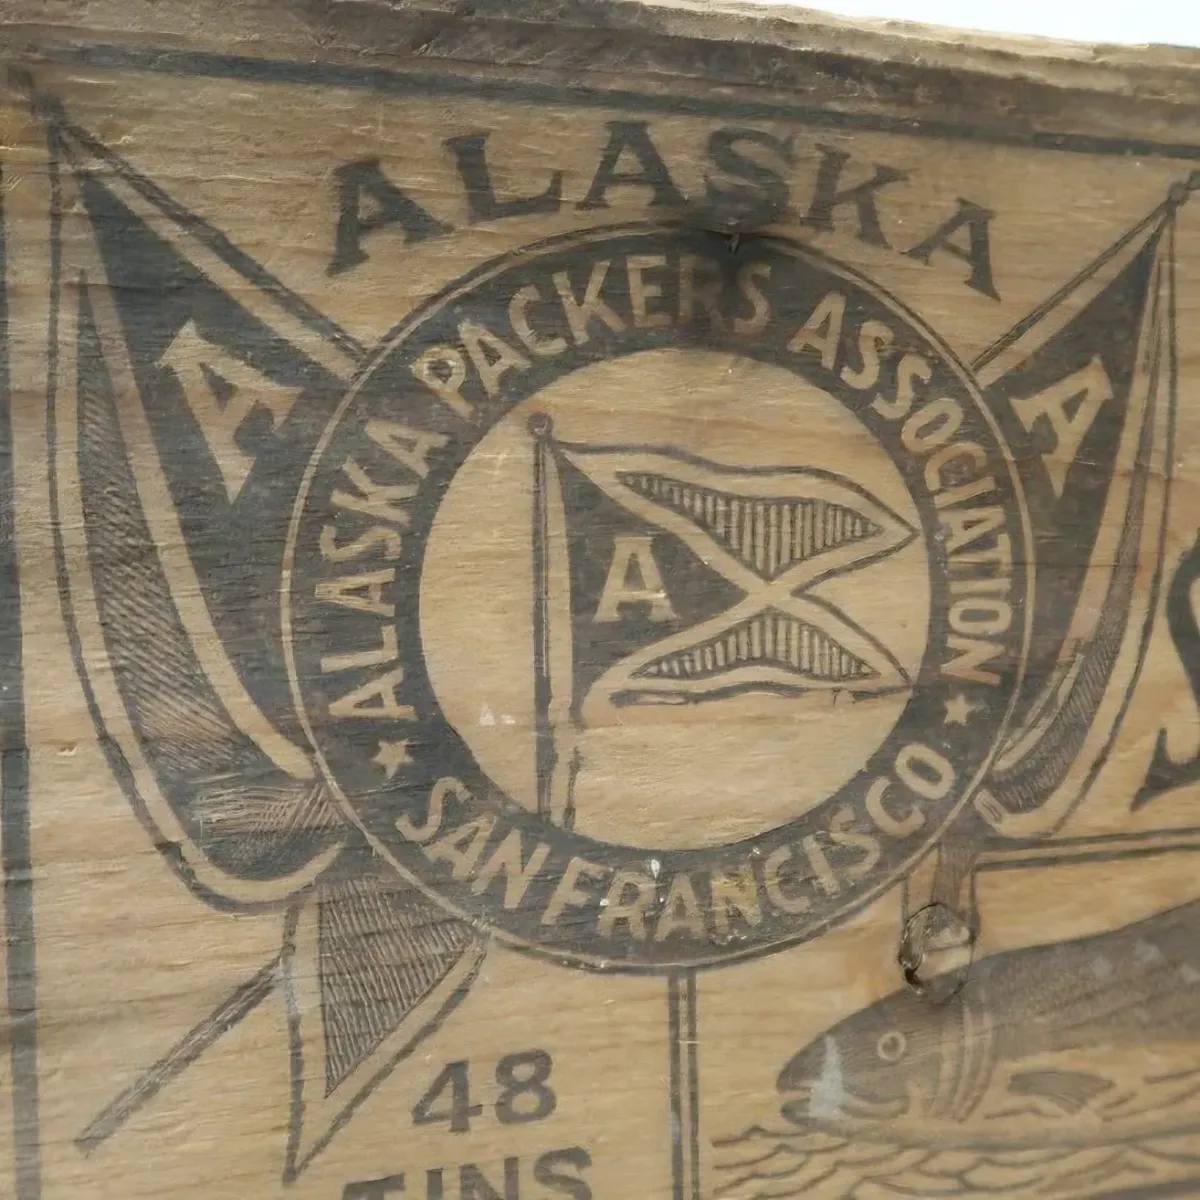 ALASKA PACKERS ASSOCIATION ビンテージ ウッドボックス